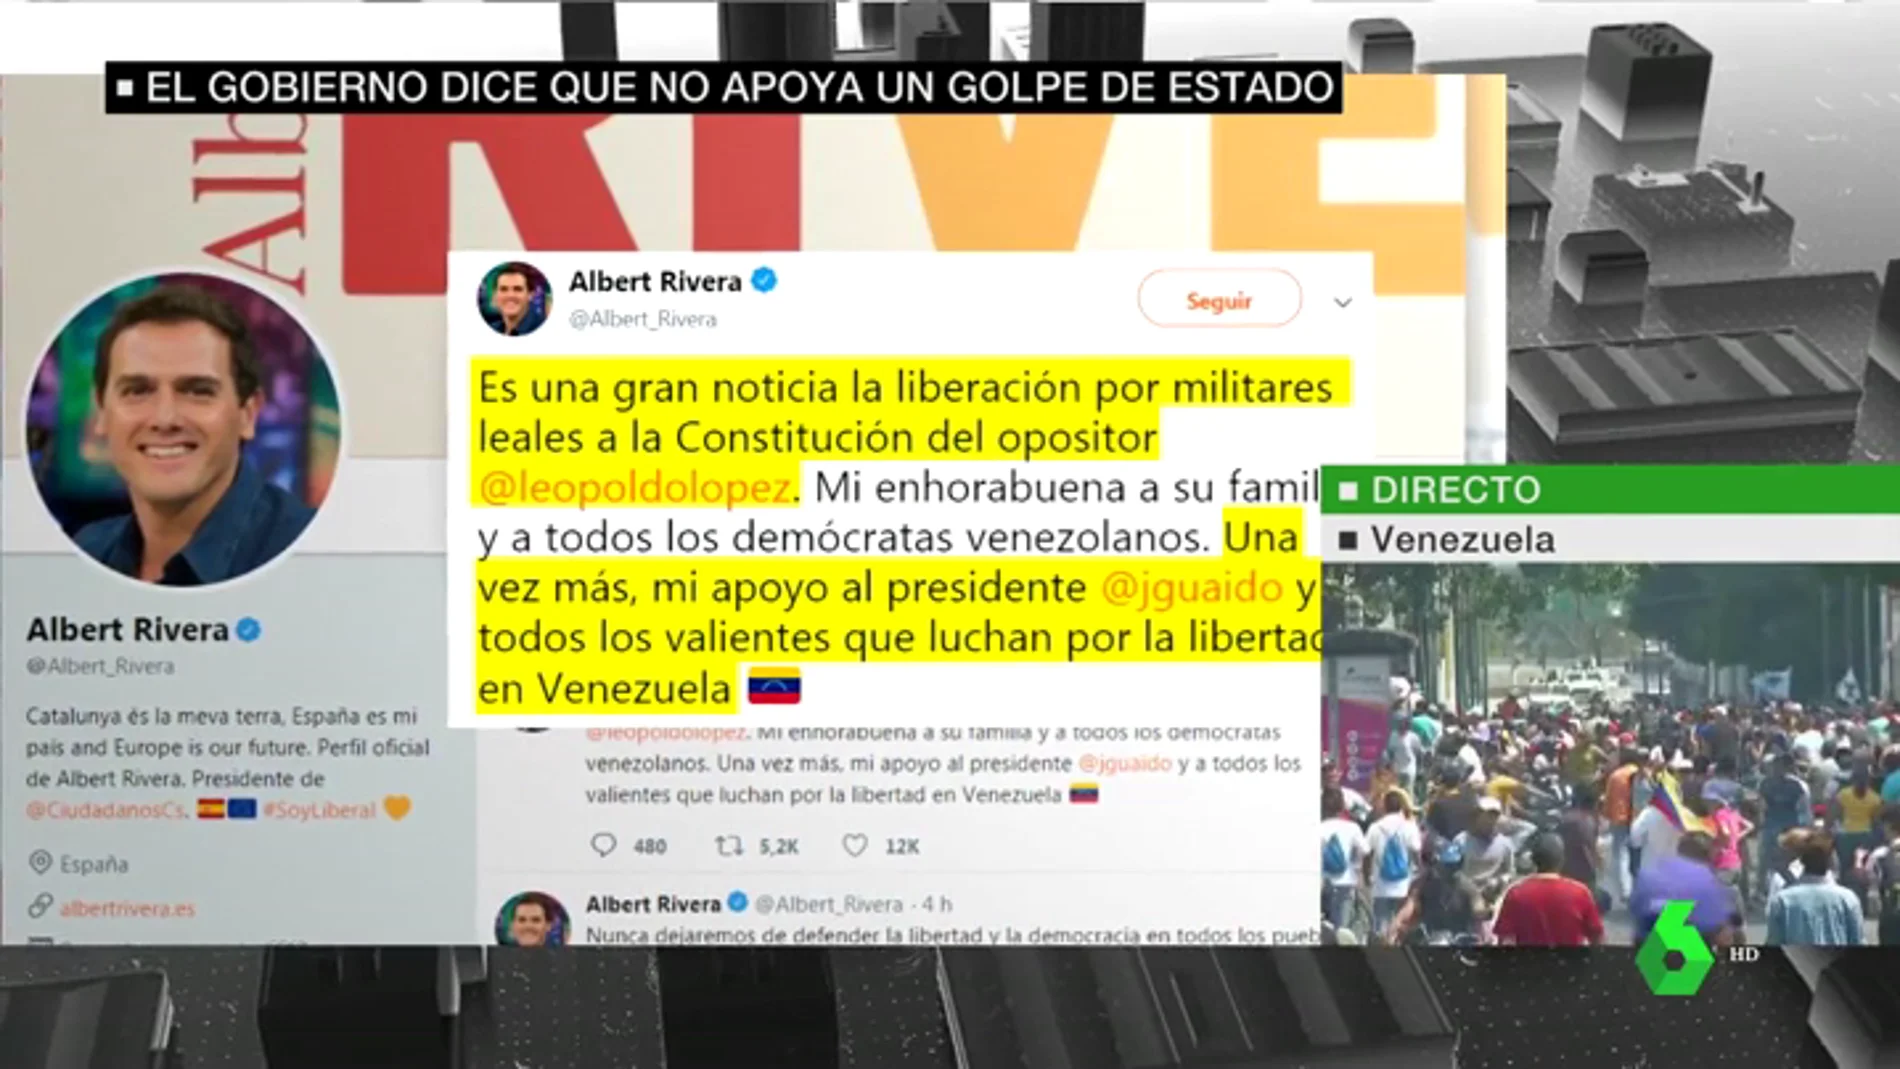 Albert Rivera se muestra a favor de Juan Guaidó: "Mi apoyo al presidente y a todos los valientes que luchan por la libertad en Venezuela"